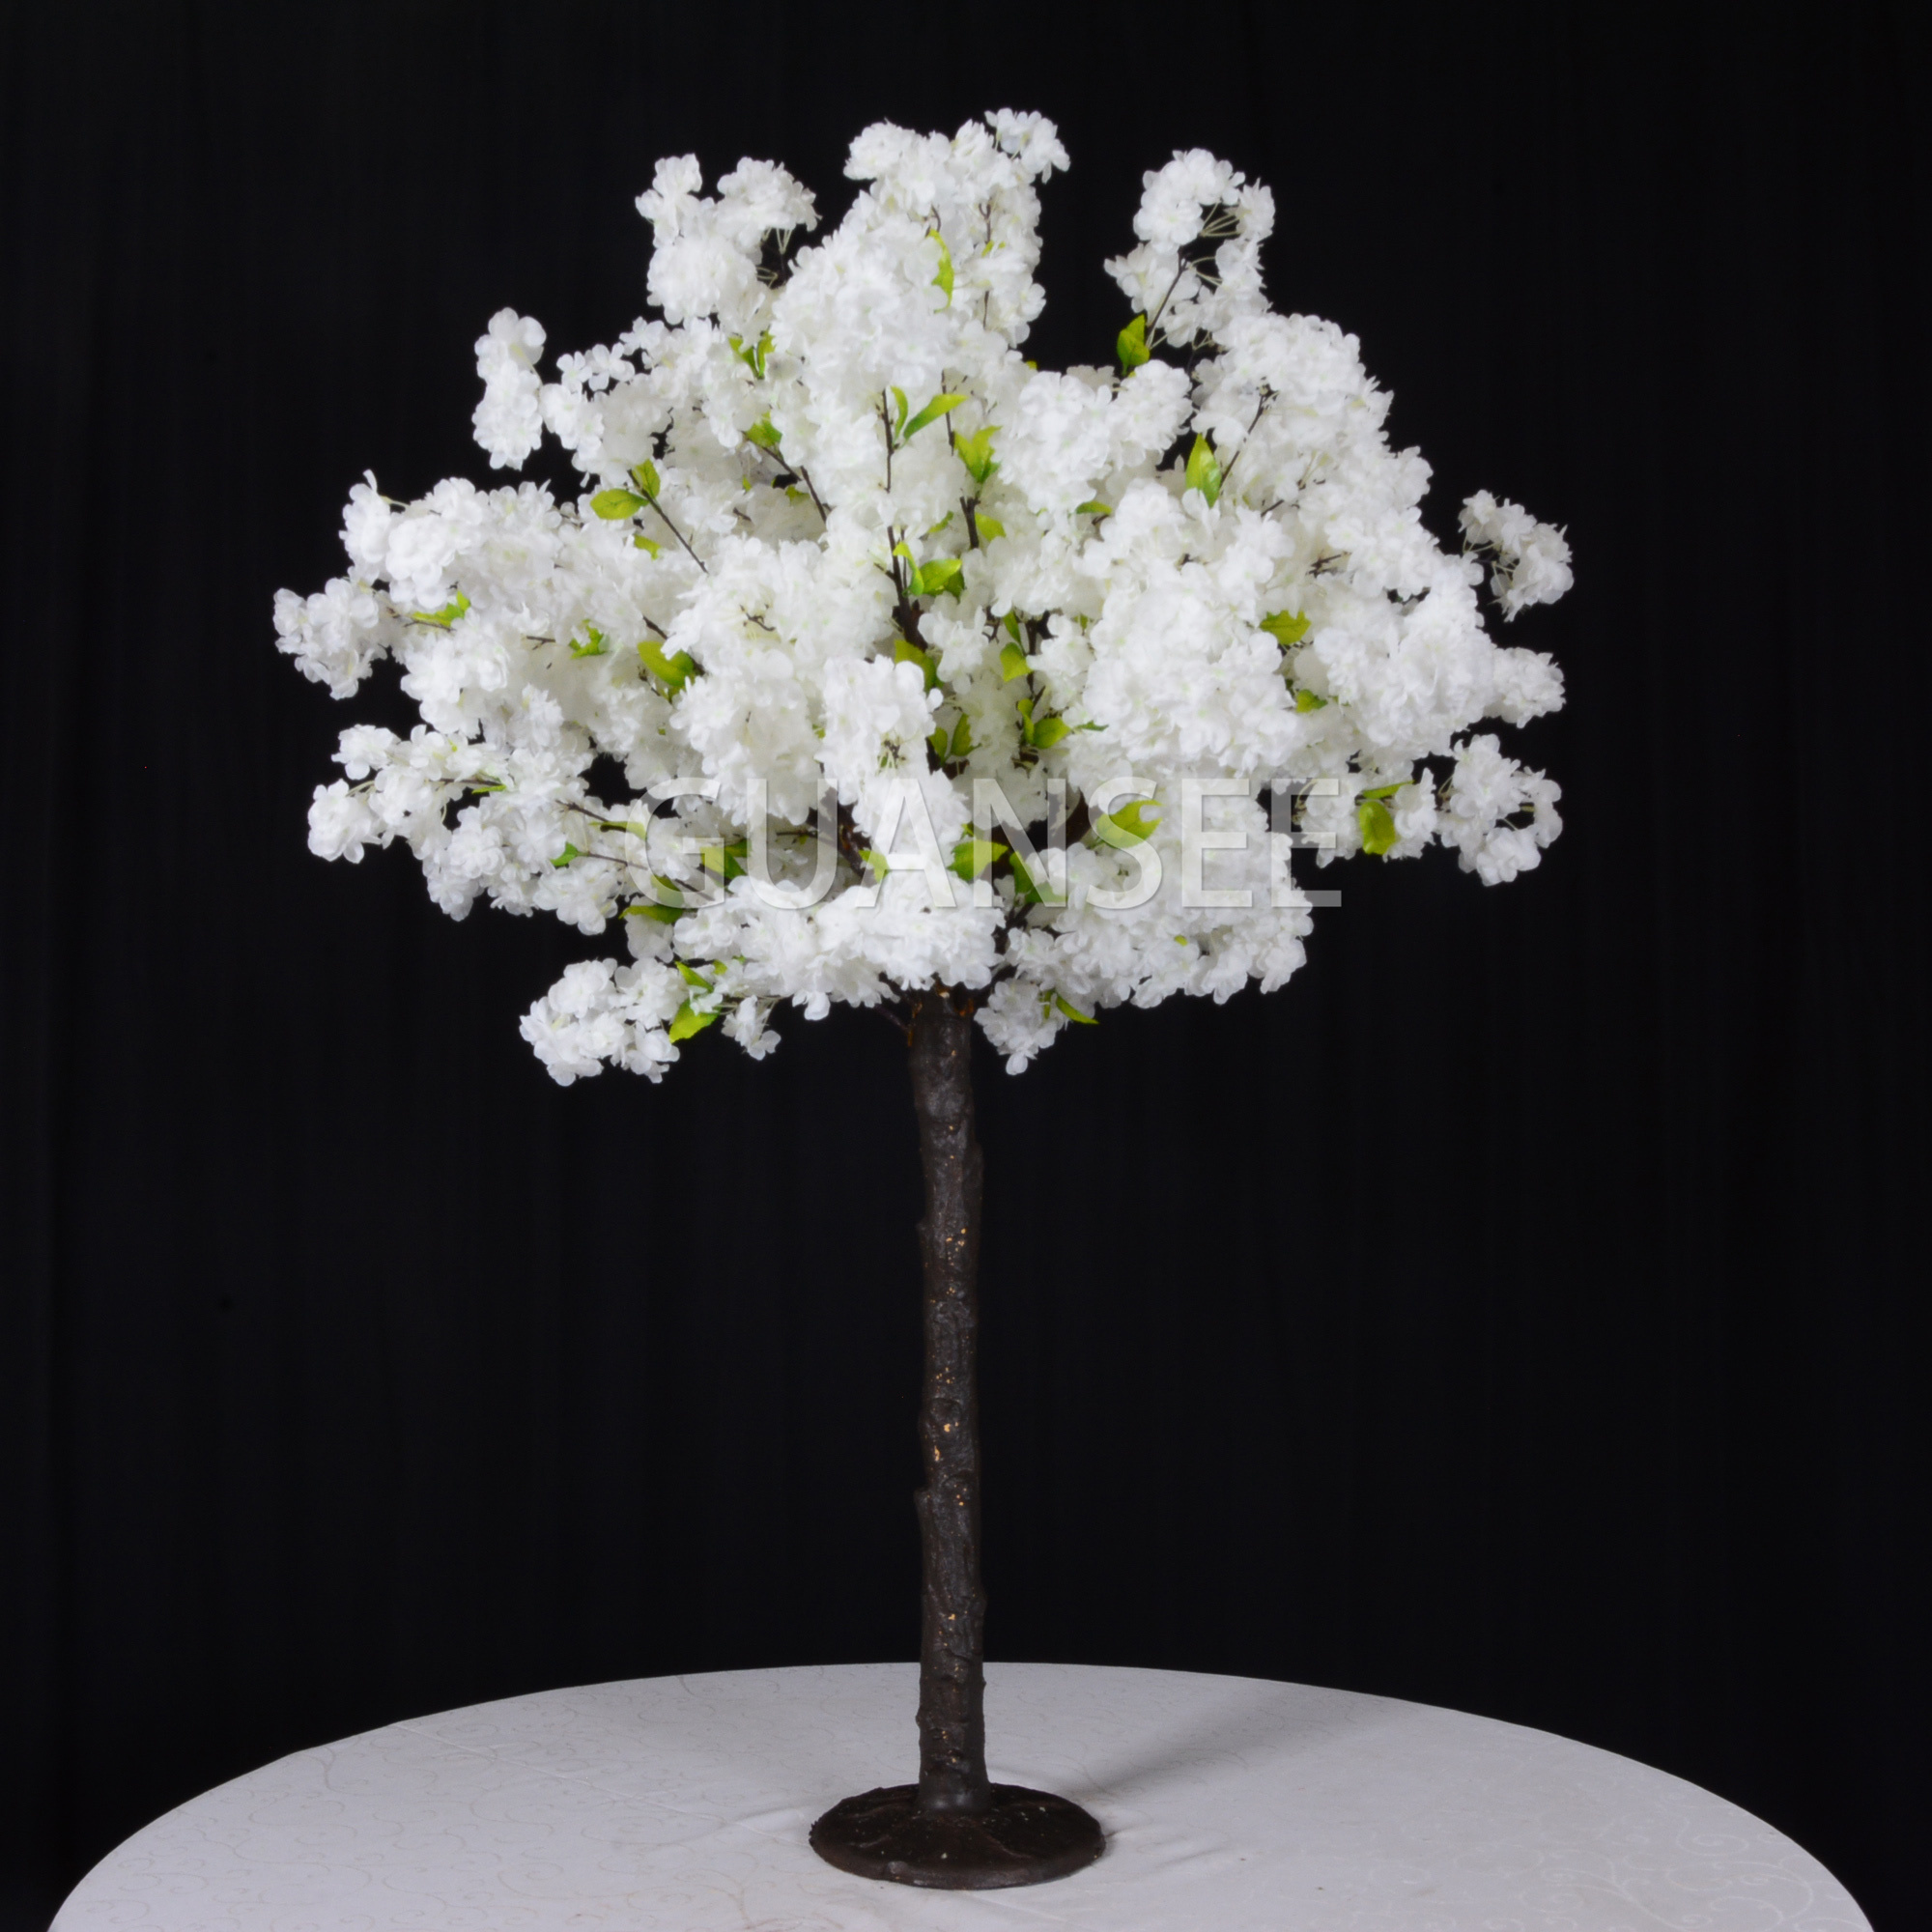 4ft artificial White flowerscherry blossom tree decoration wedding centerpiece